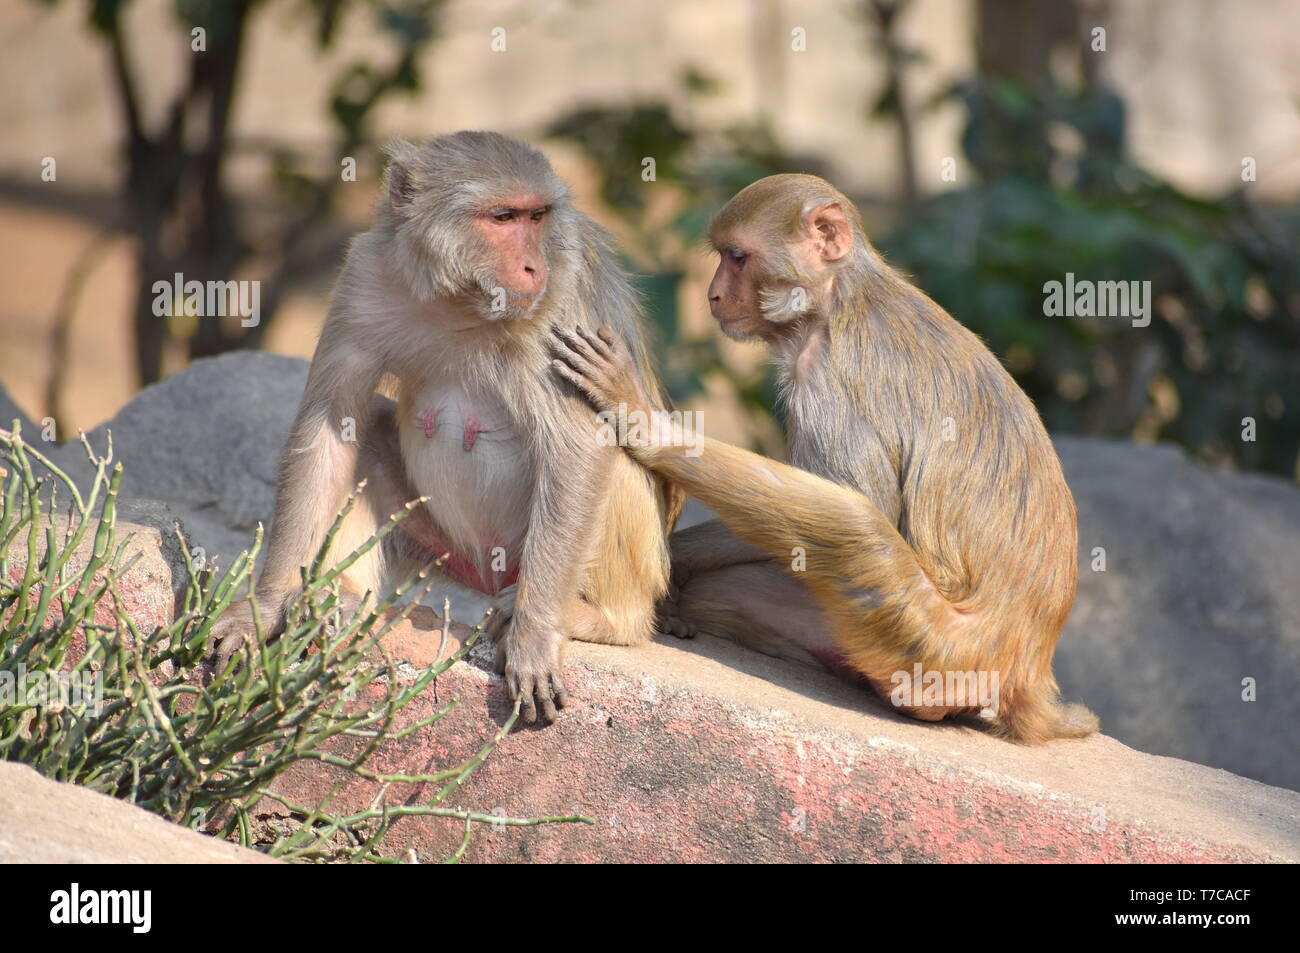 Asegurando la mano sobre el hombro: un joven mono macaco Rhesus con una hembra adulta descansando junto con fondo borroso - Concepto de aseguramiento y Amor Foto de stock